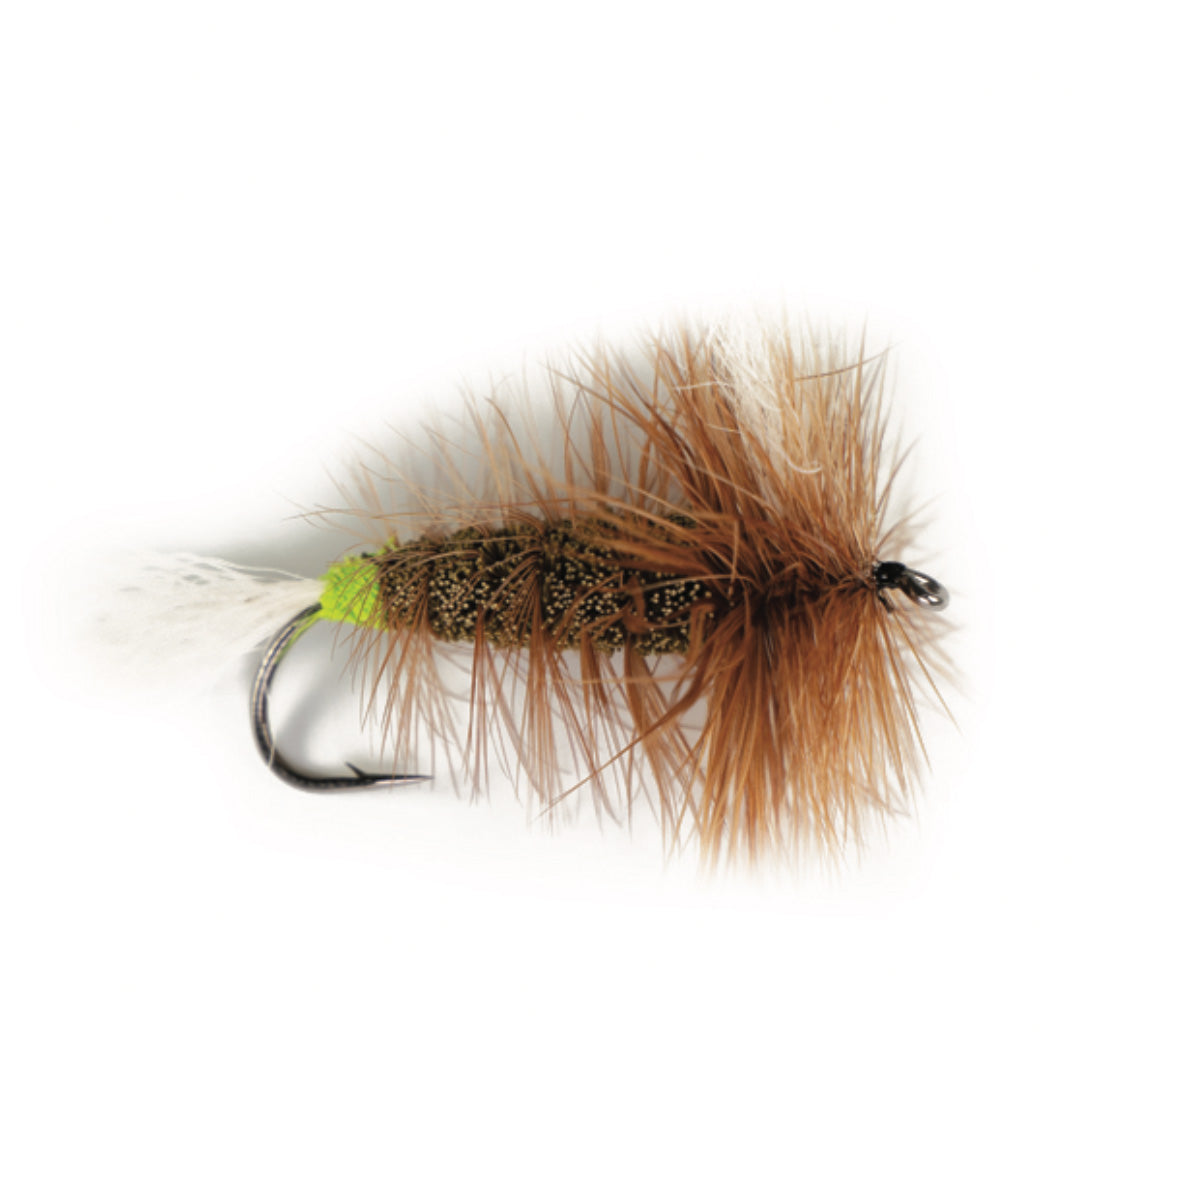 Atlantic Salmon Flies | Olive Killer Whisker - Capsize Fly Fishing